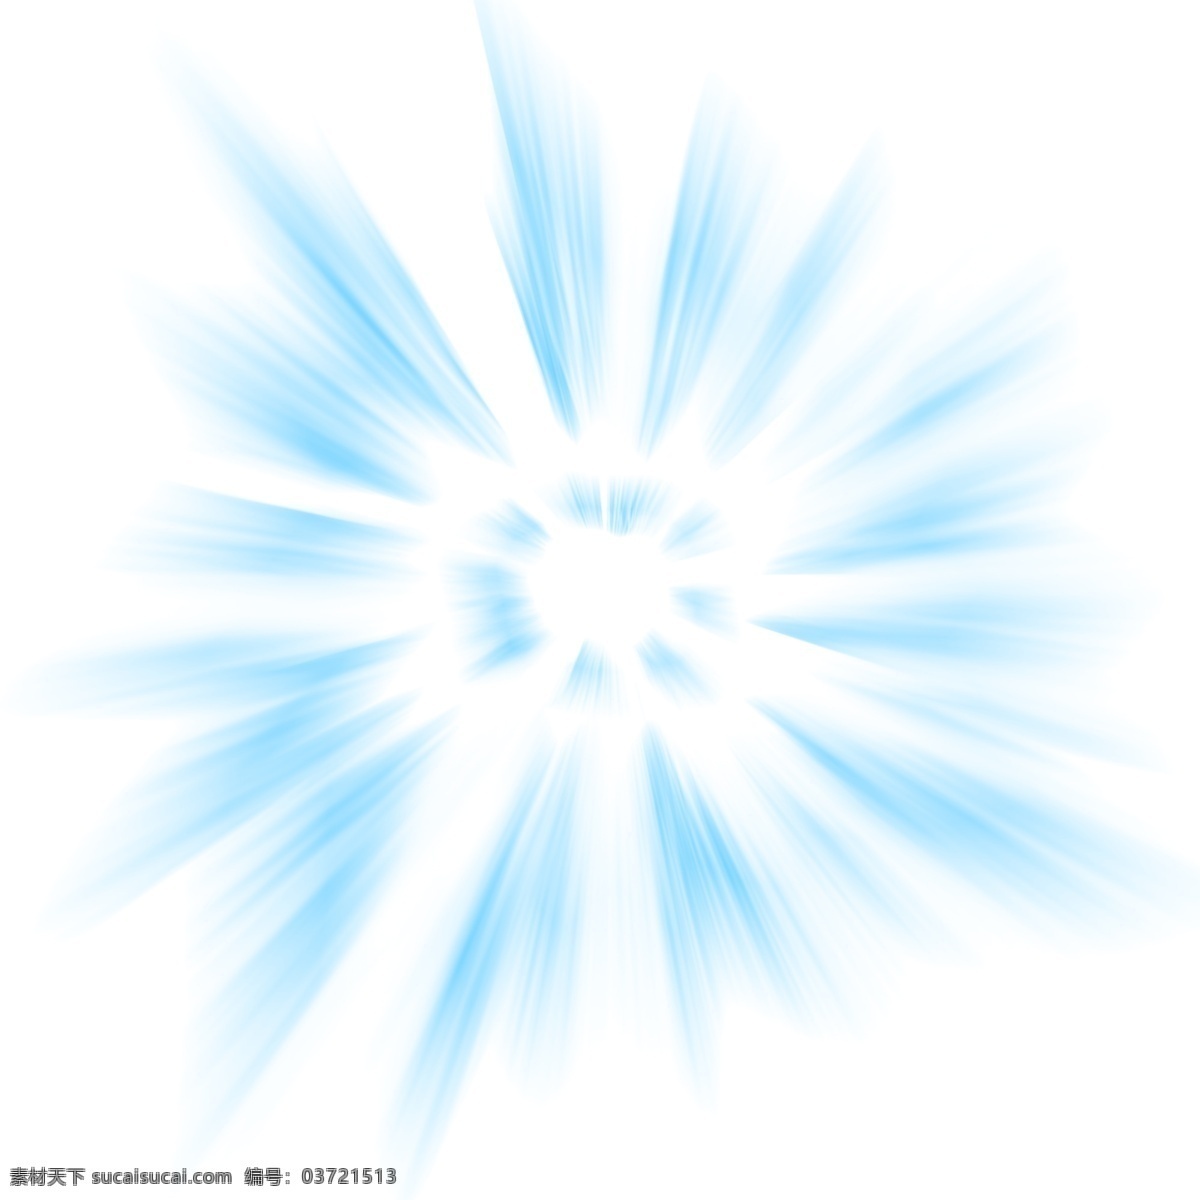 蓝色 光束 发光 图案 透明 底 蓝色发光 光效 光圈 光环 免抠图 装饰图 光点 插画 青色 魔法阵 圆环发光